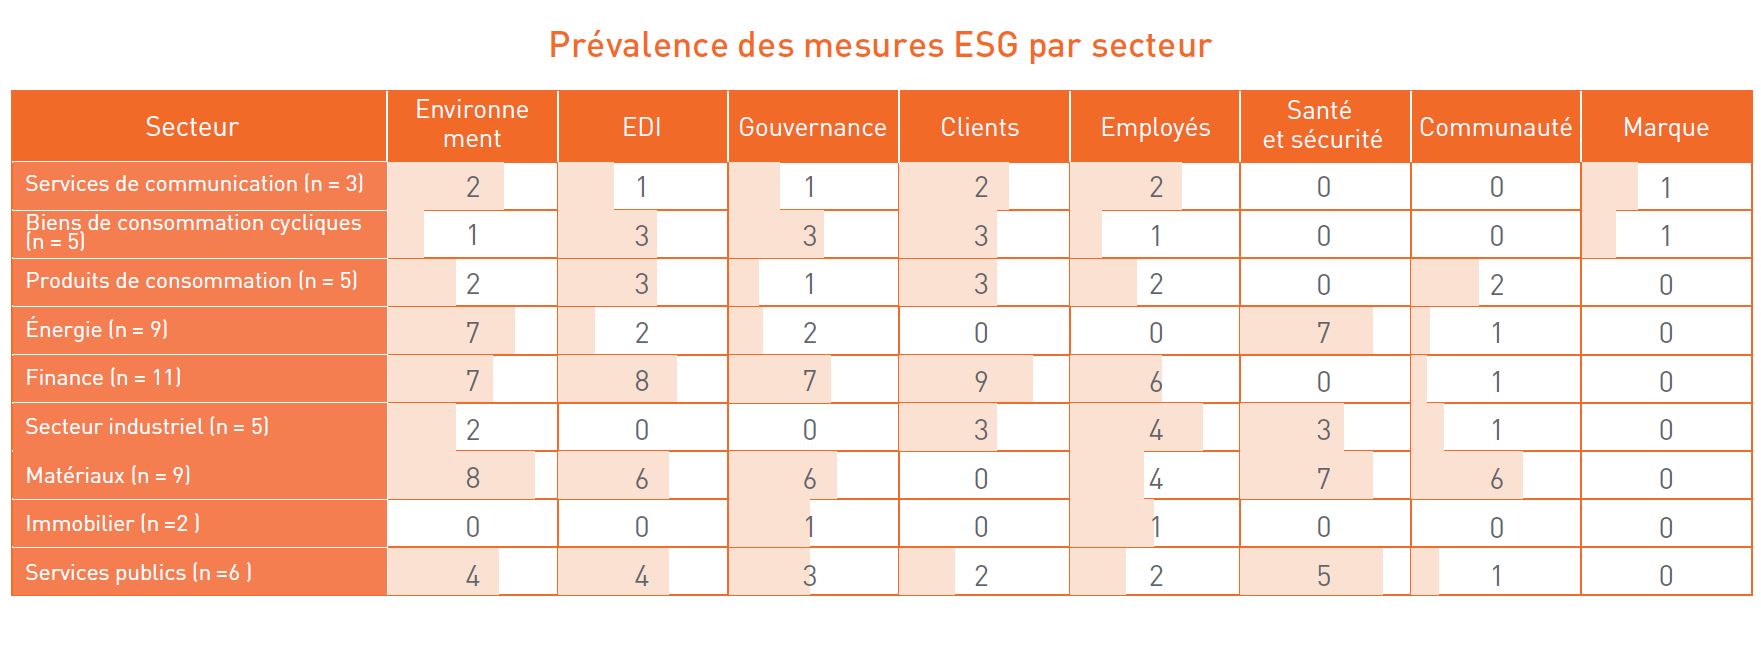 Prévalence des mesures ESG par secteur